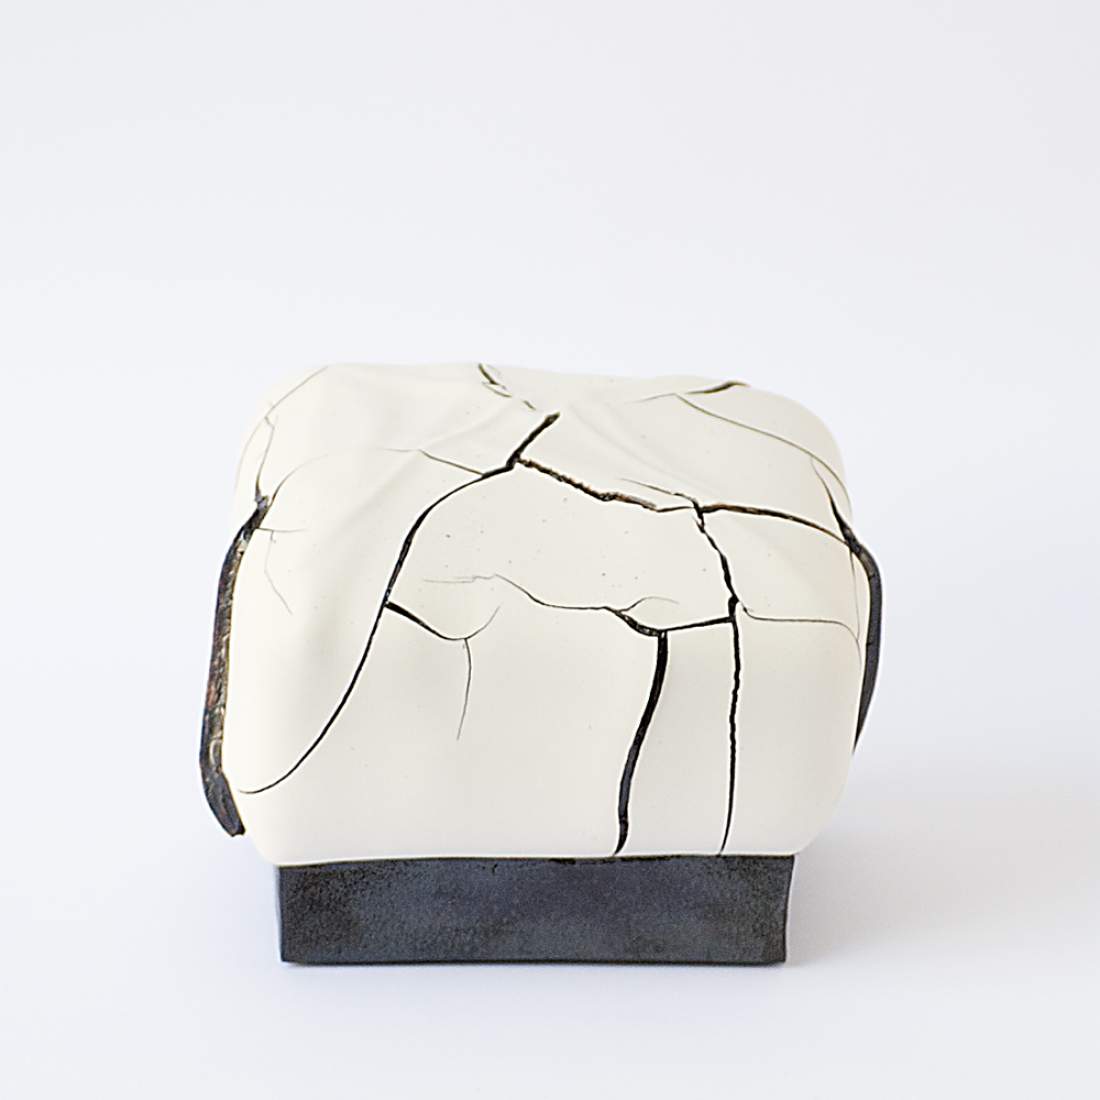 Pieza de cerámica de Joan Serra